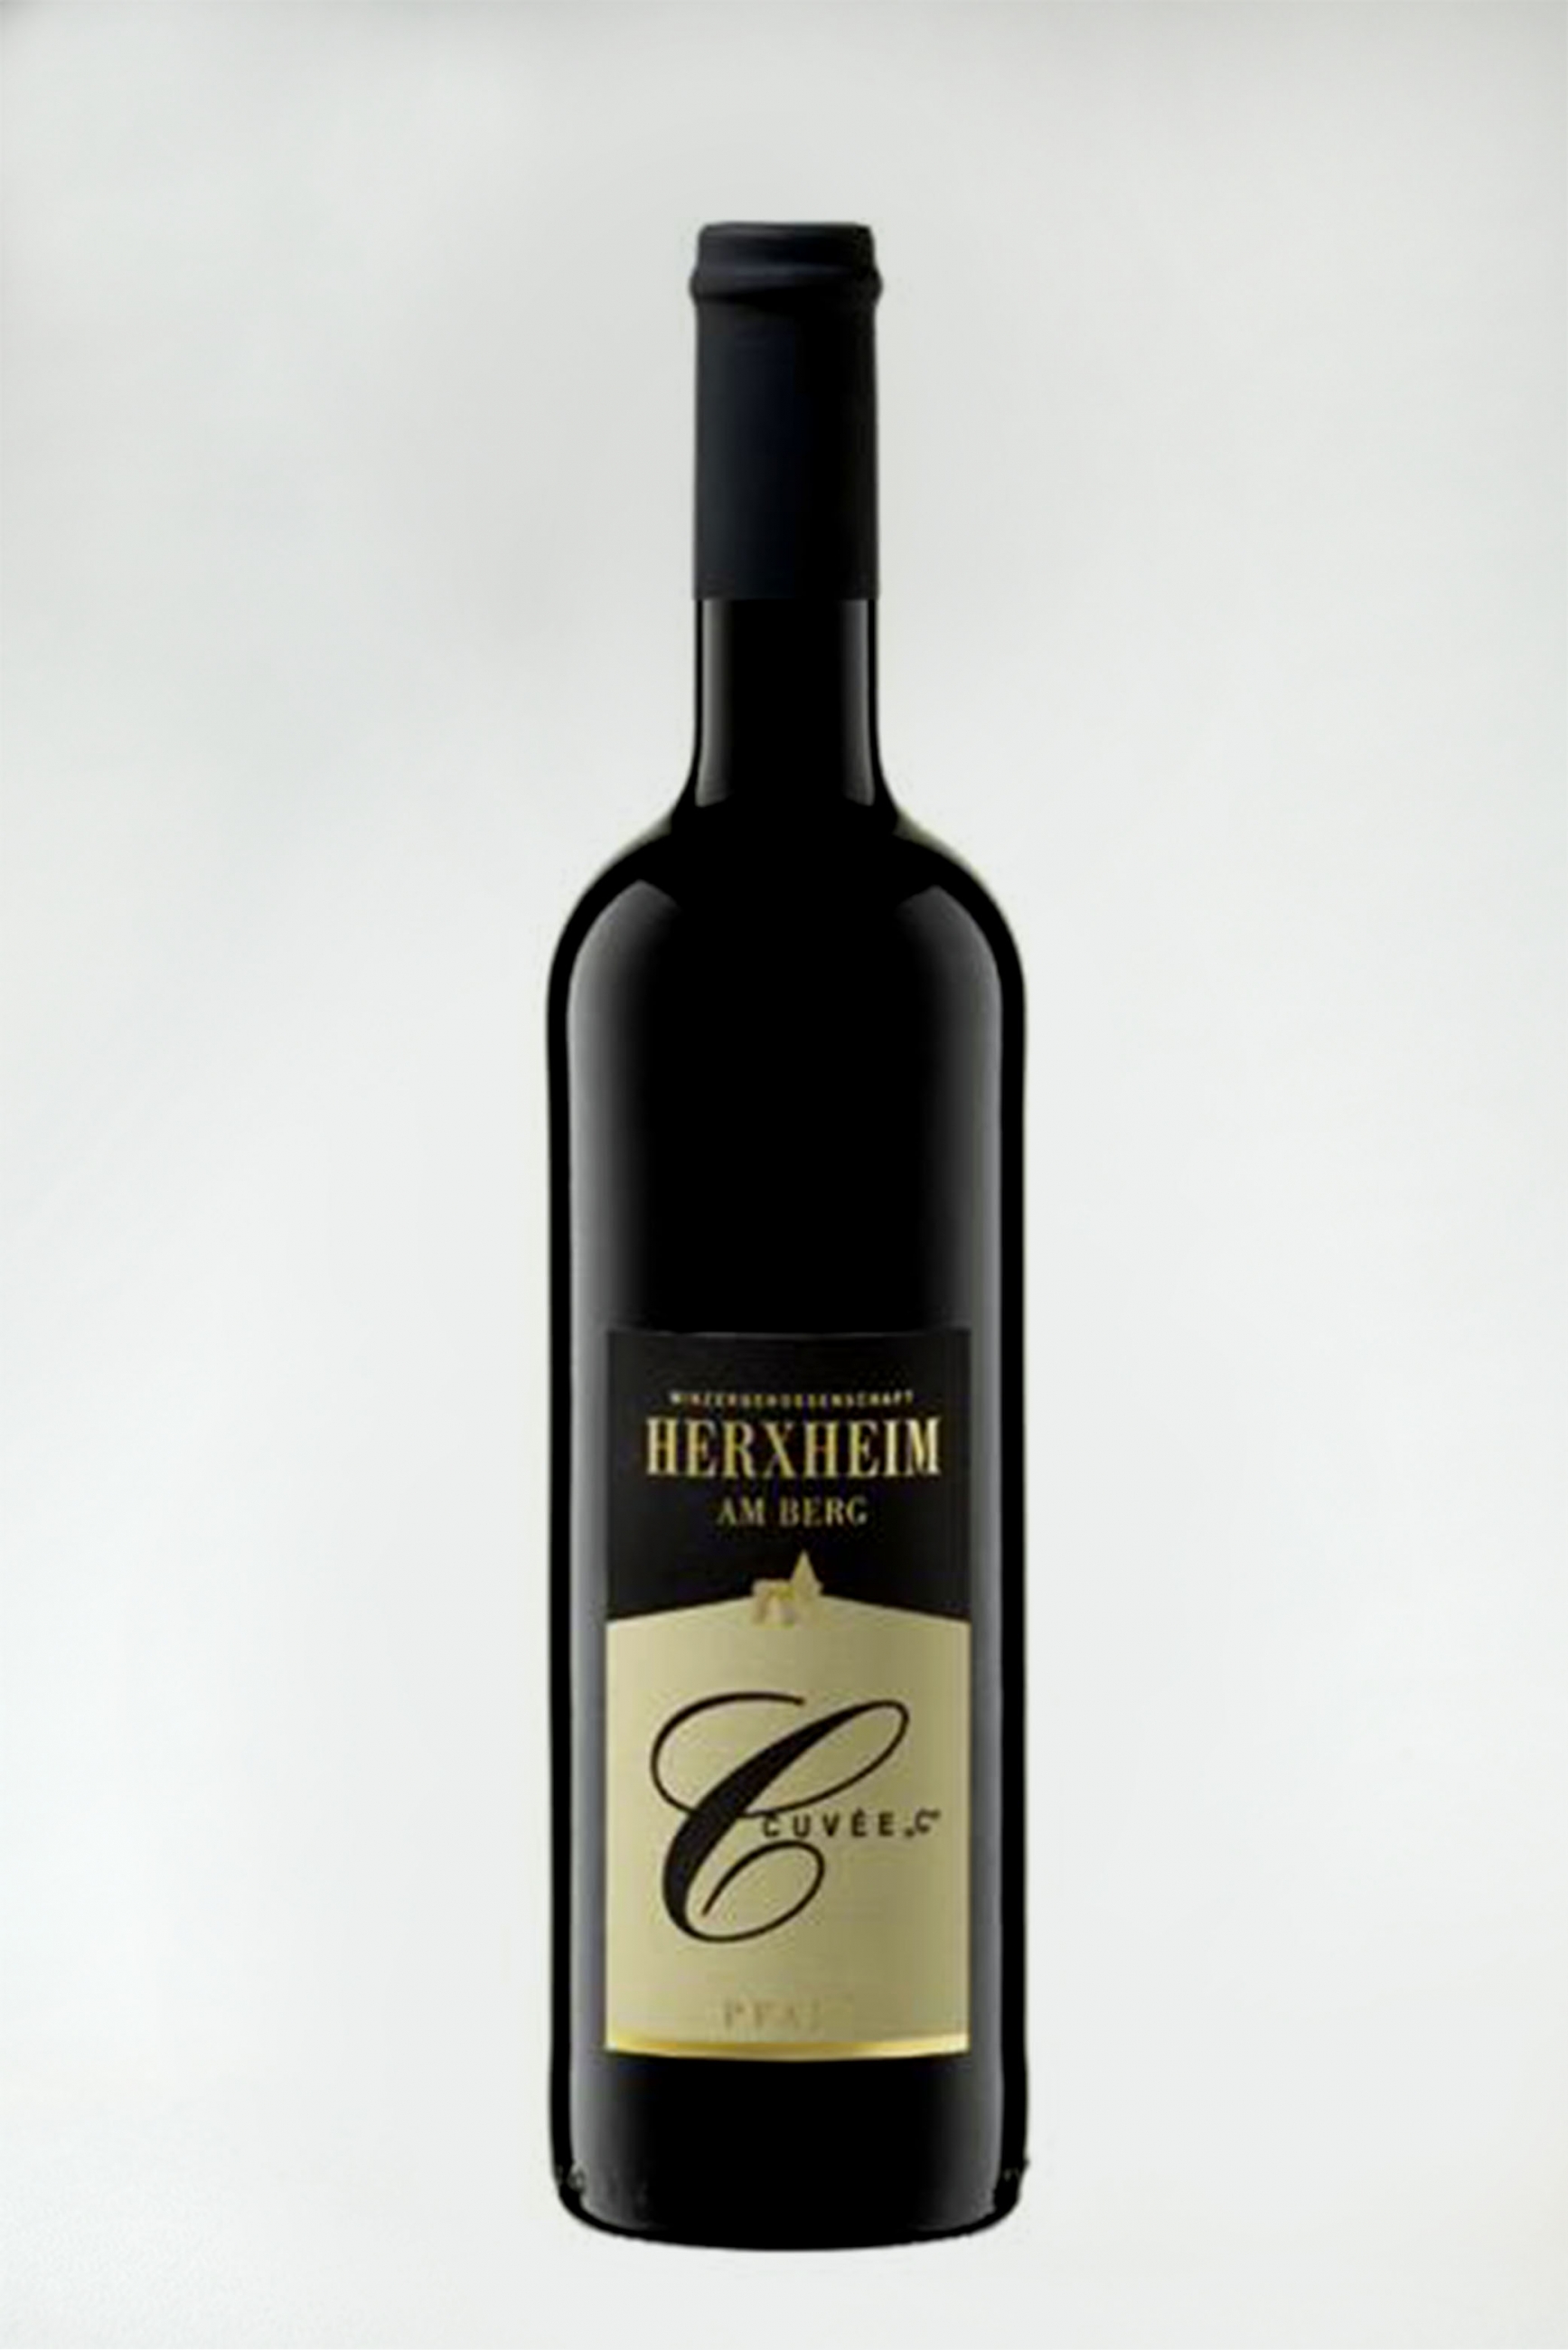 Rượu Herxheim Cuvée ,,C"Rotwein Trocken